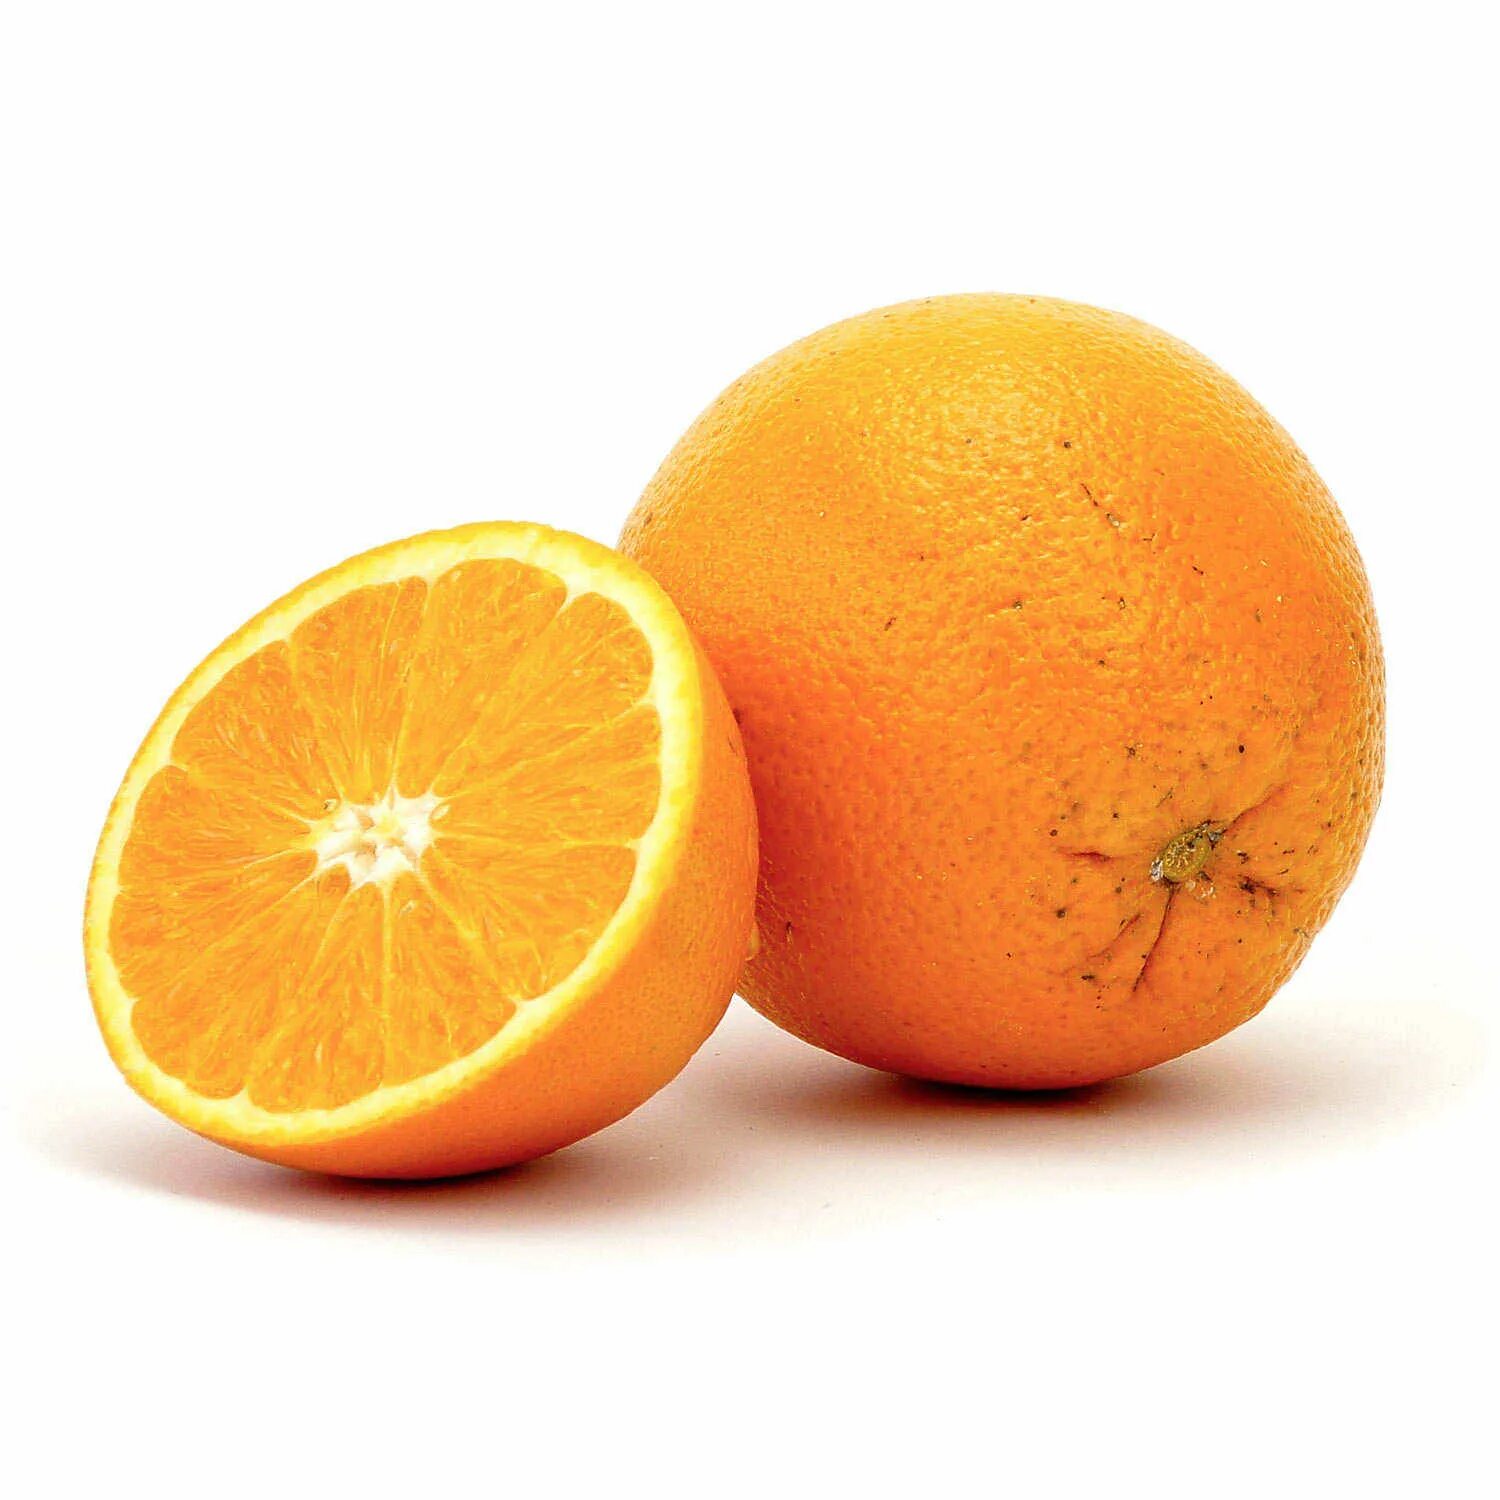 They like oranges. Апельсин. Апельсин фрукт. Апельсин на белом фоне. Апельсин для детей.